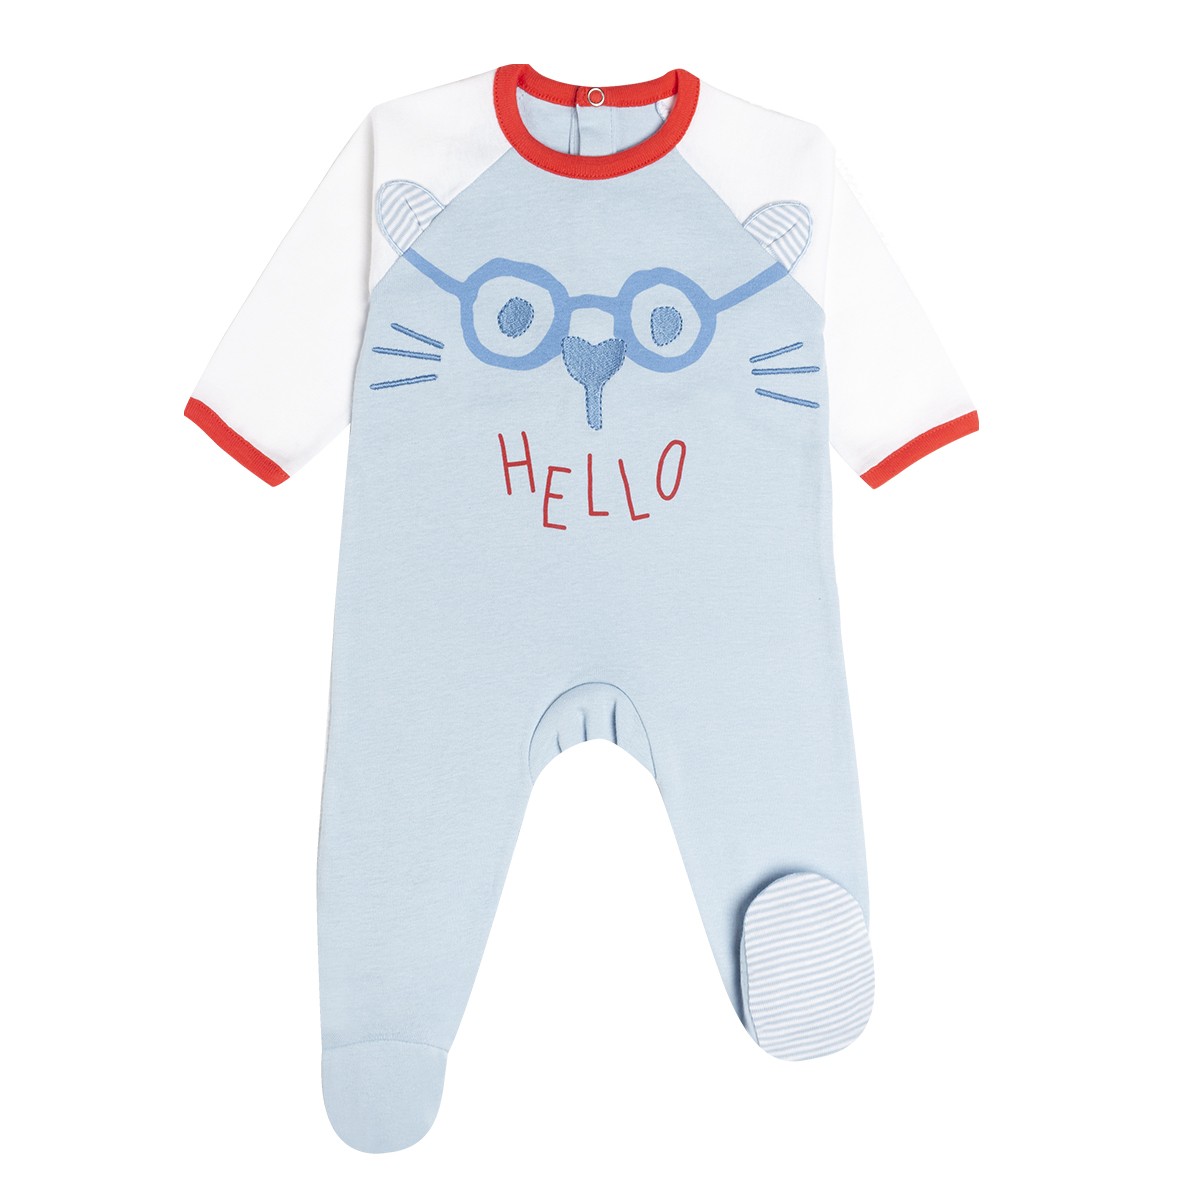 Dors bien, pyjama, grenouillère en 100% coton pour bébé garçon.